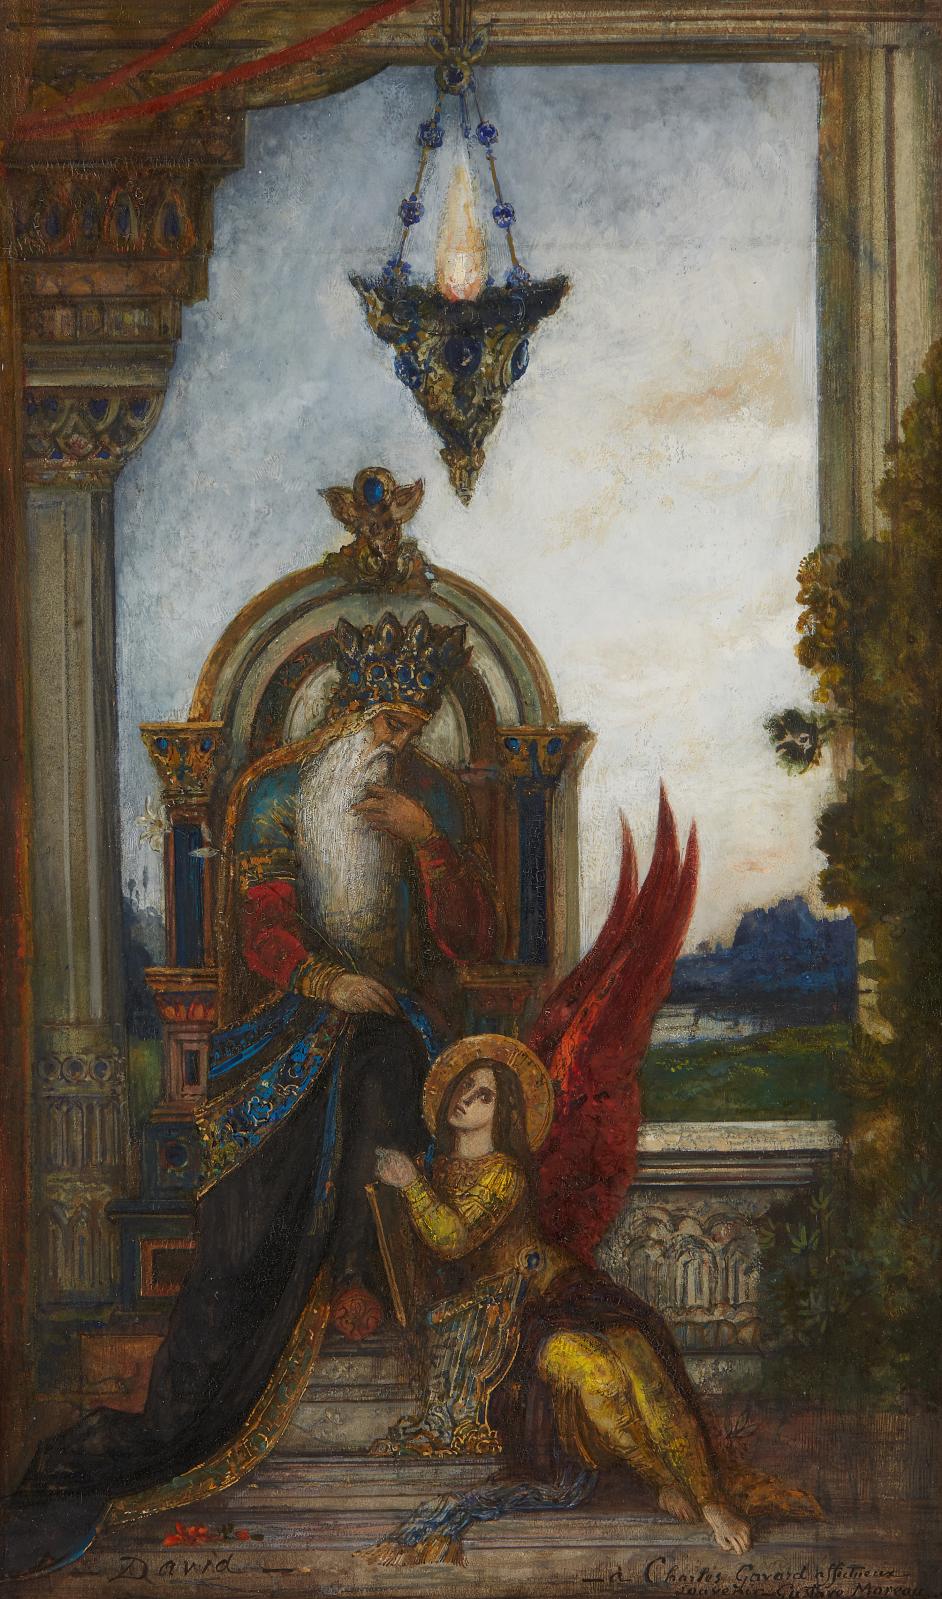 Gustave Moreau et le roi David